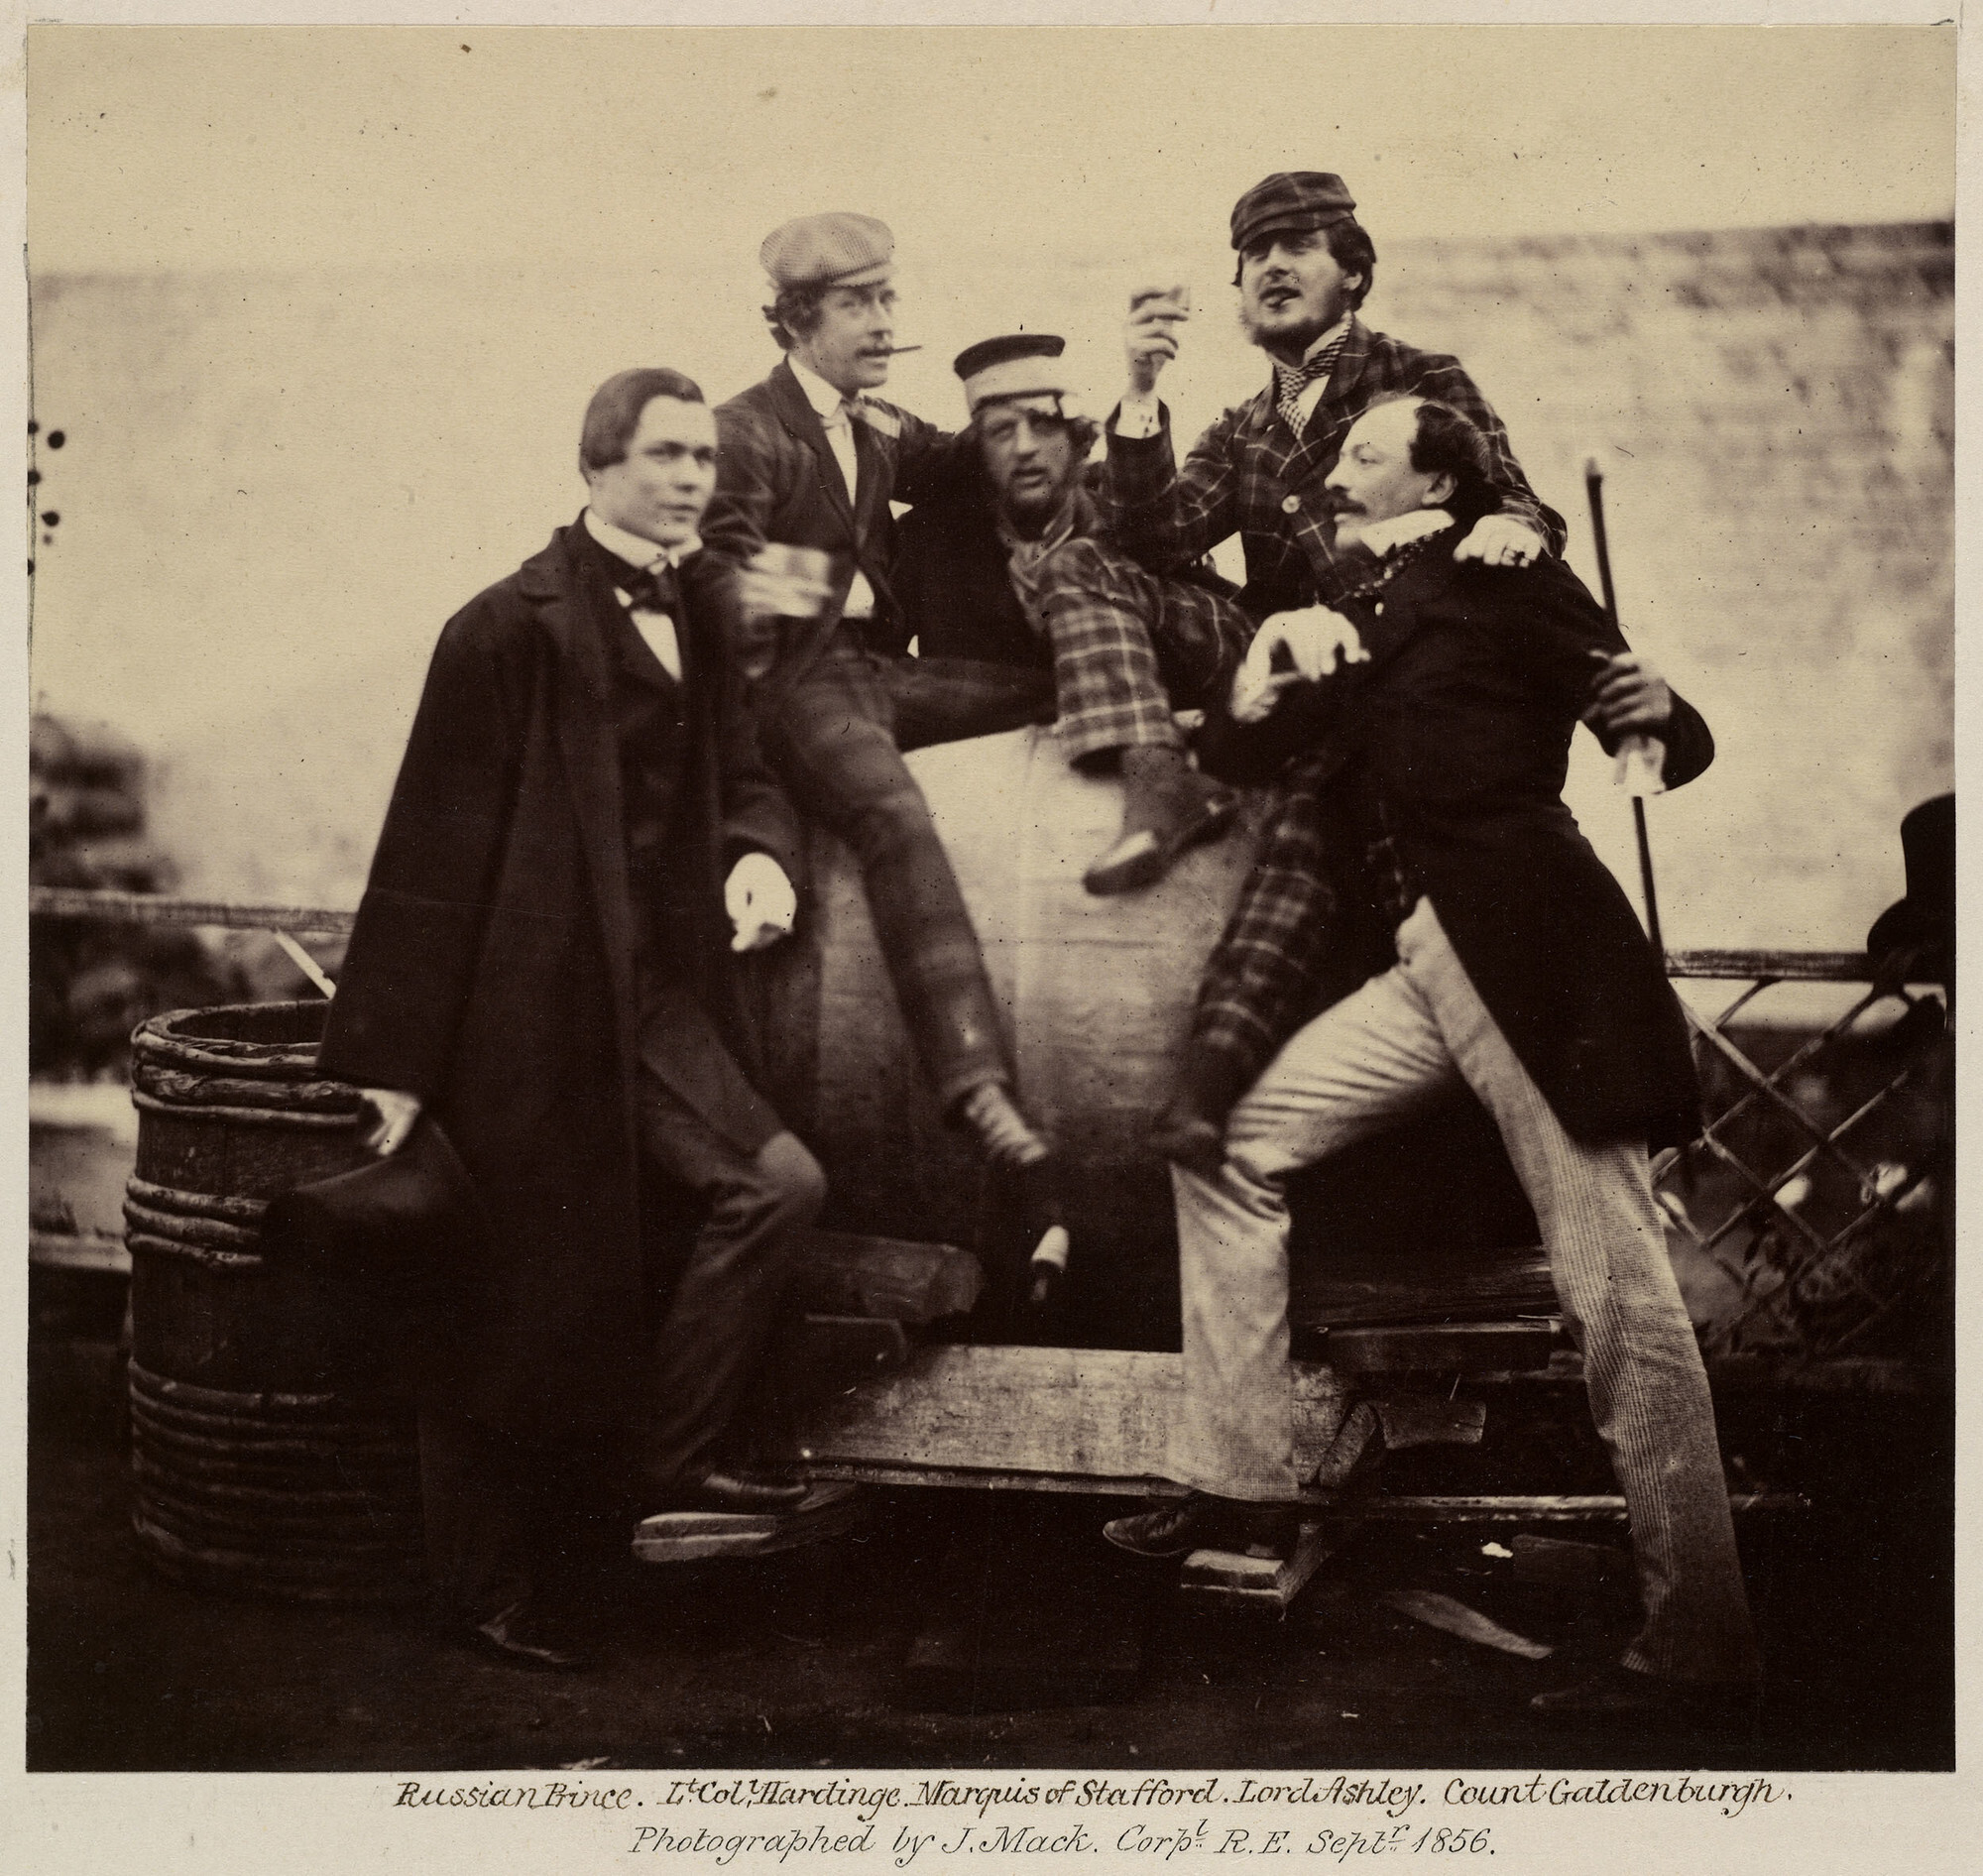 Российские и британские аристократы во время празднования коронации Александра II, Россия, 1856. Фотограф Джеймс Мак